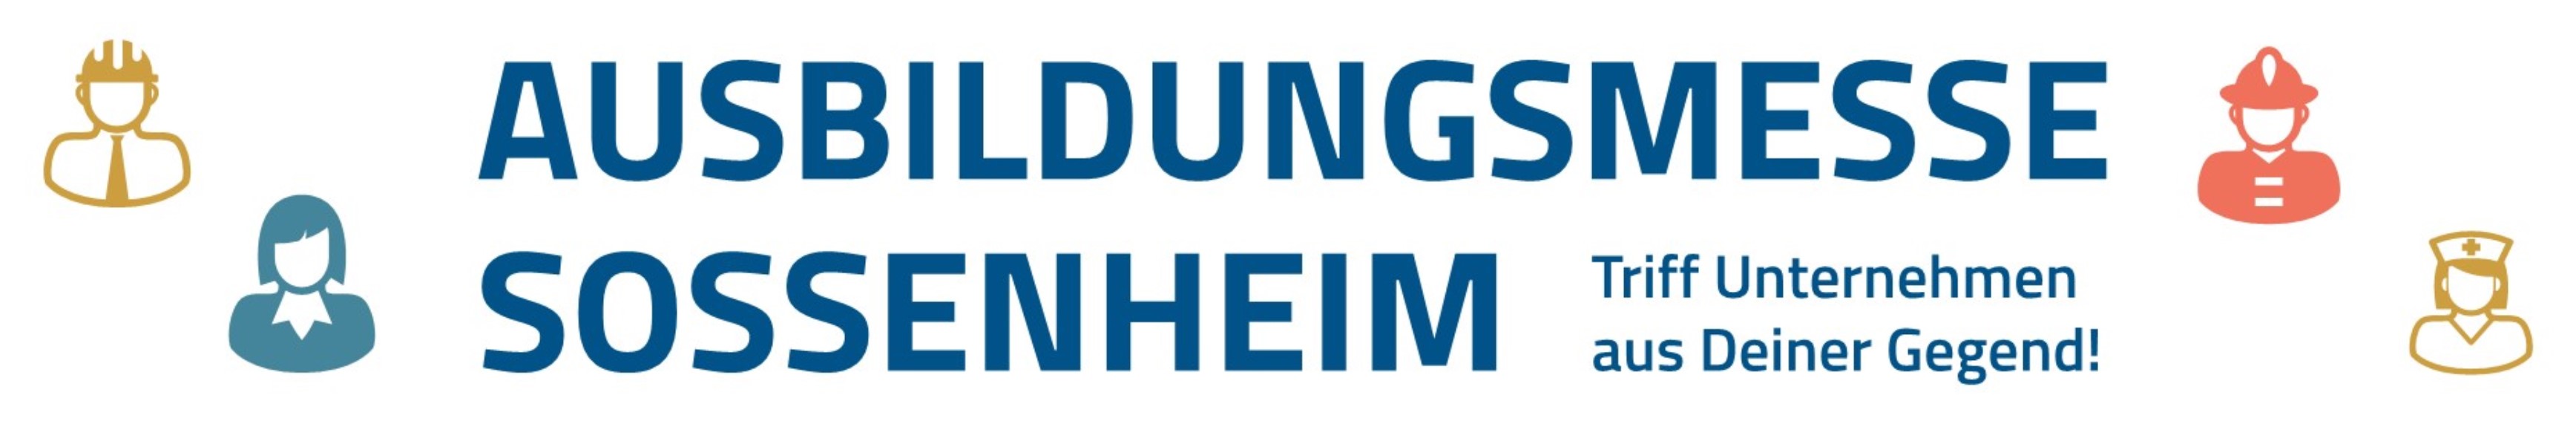 Logo ausbildungsmesse